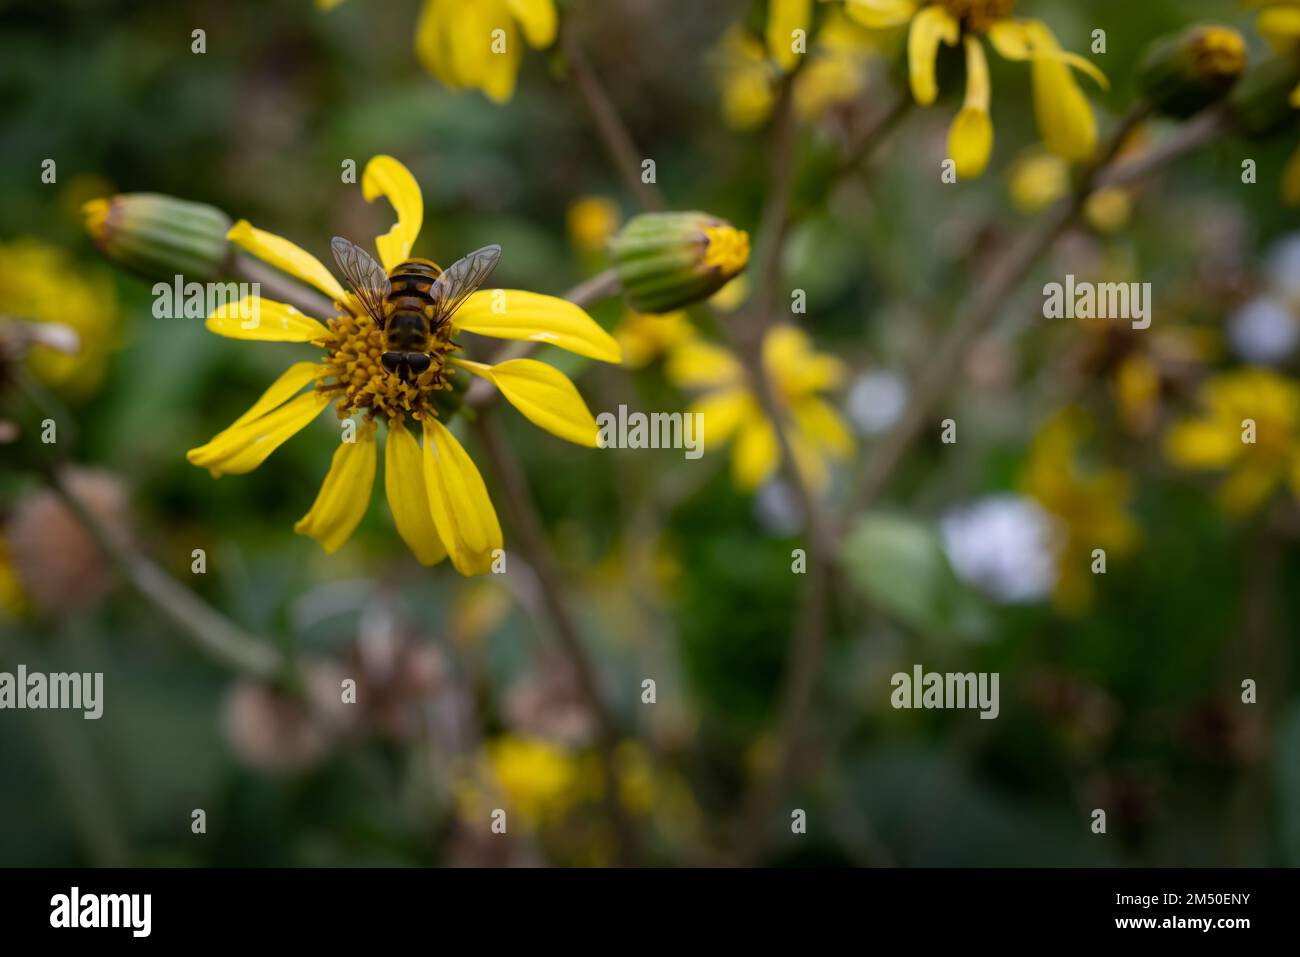 Fleurs jaunes principalement floues sur fond de feuilles vert foncé. Une abeille pollinisant Banque D'Images